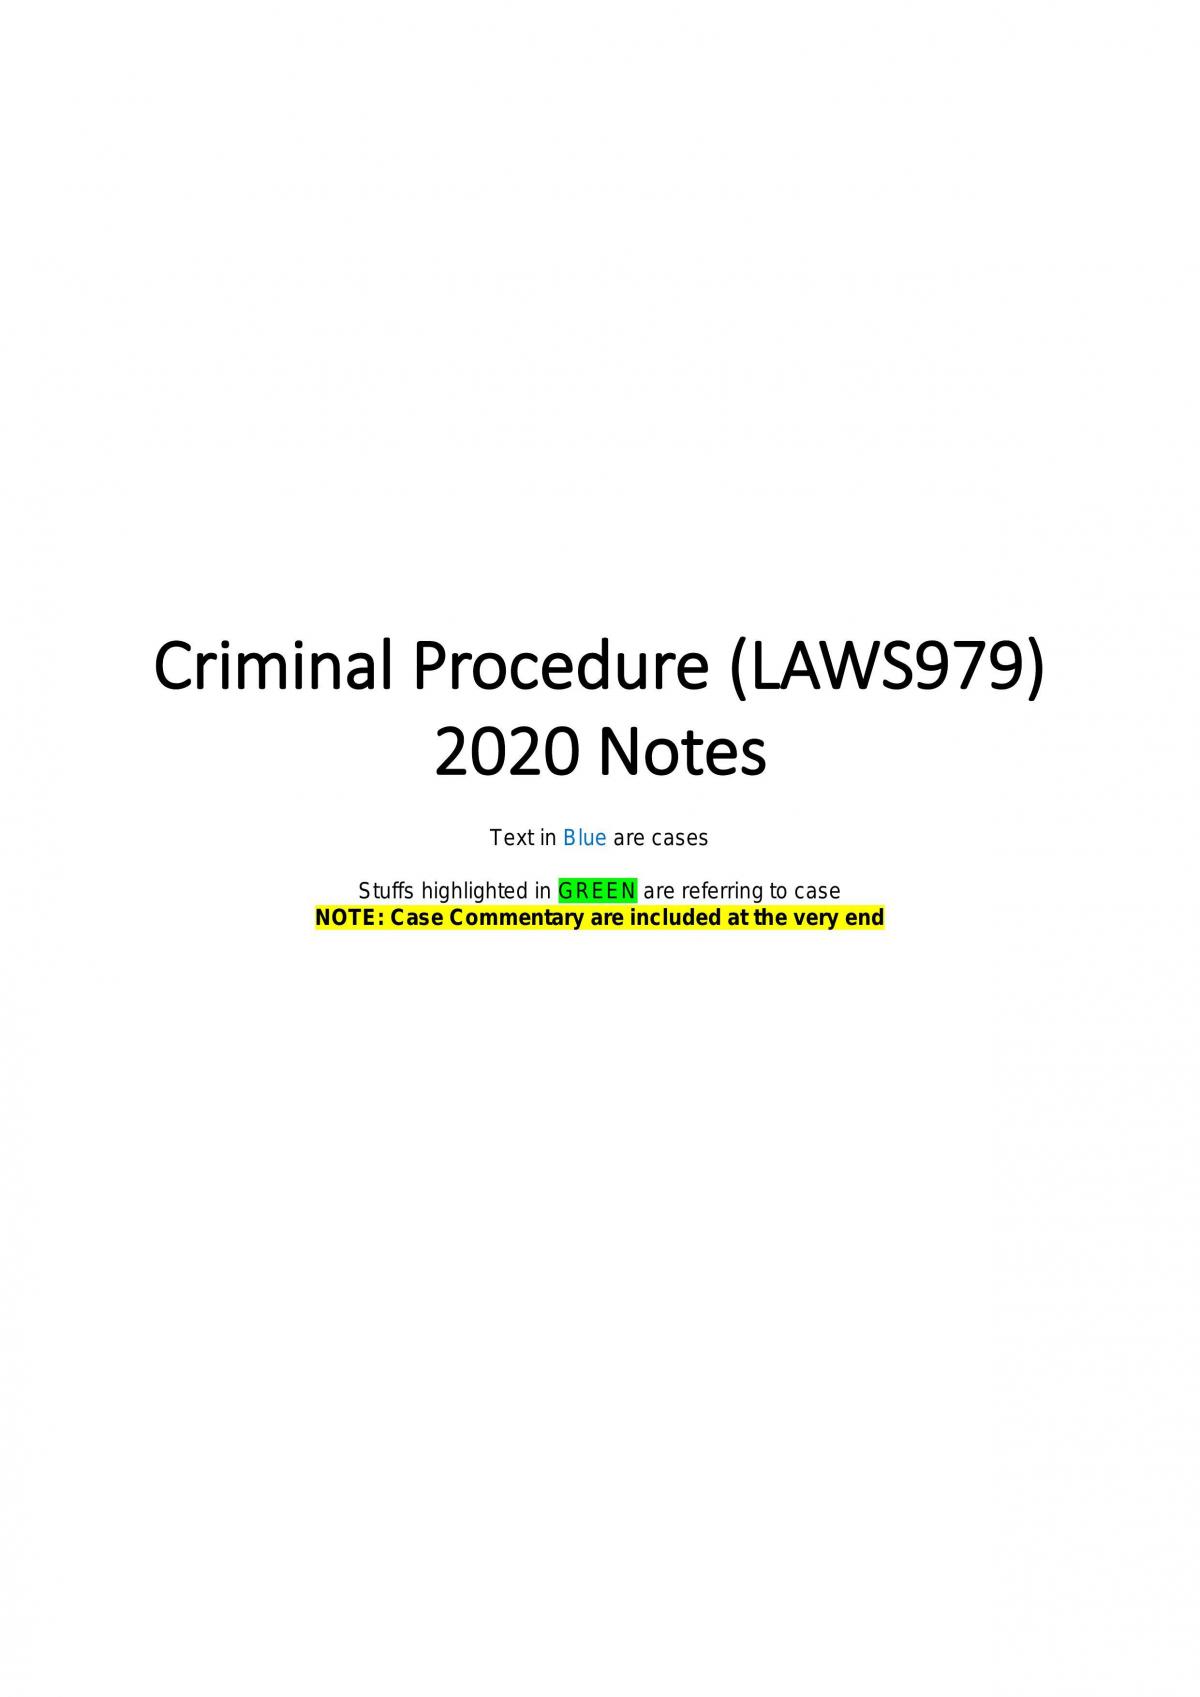 Criminal Procedure Week 1 to Week 10 - Page 1